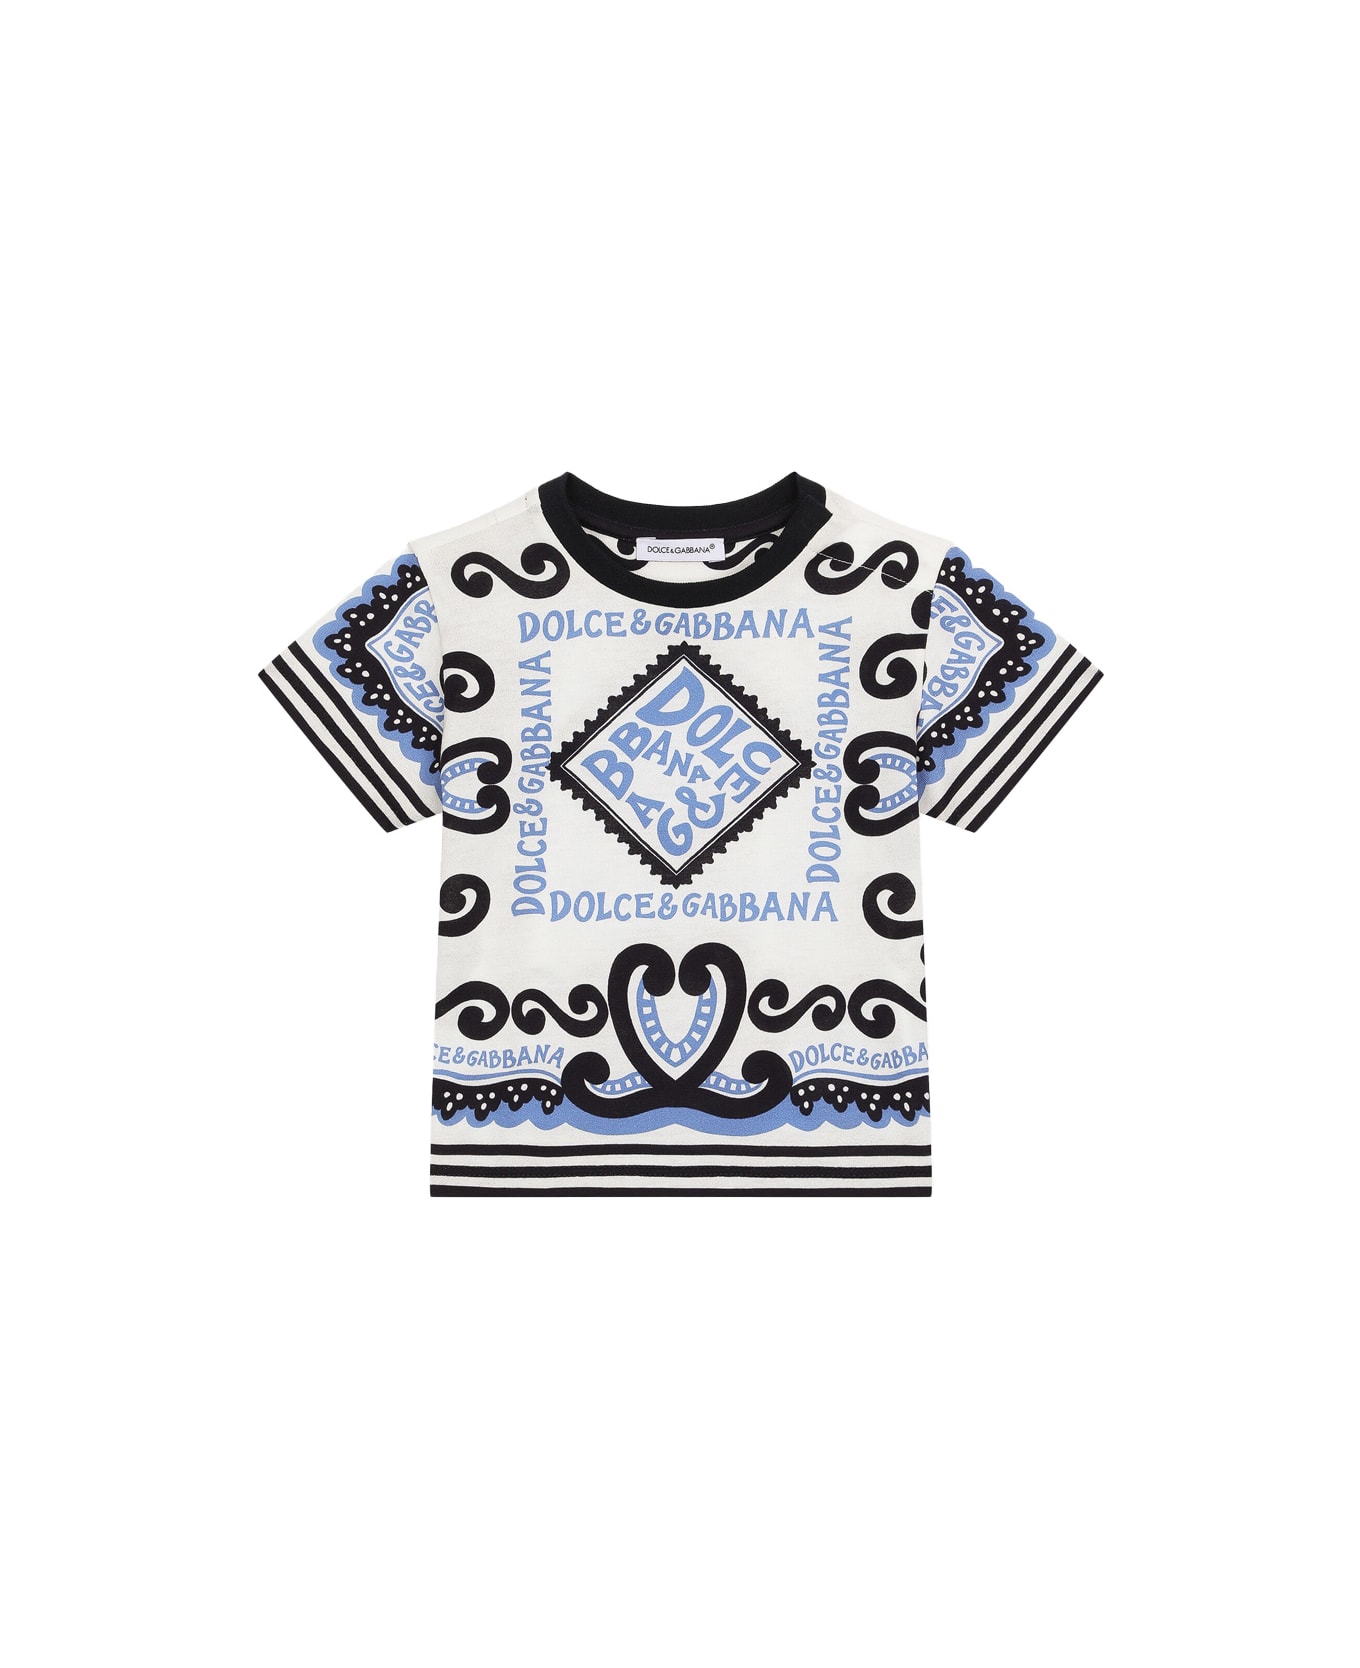 Dolce & Gabbana Navy Print Jersey T-shirt - Blue